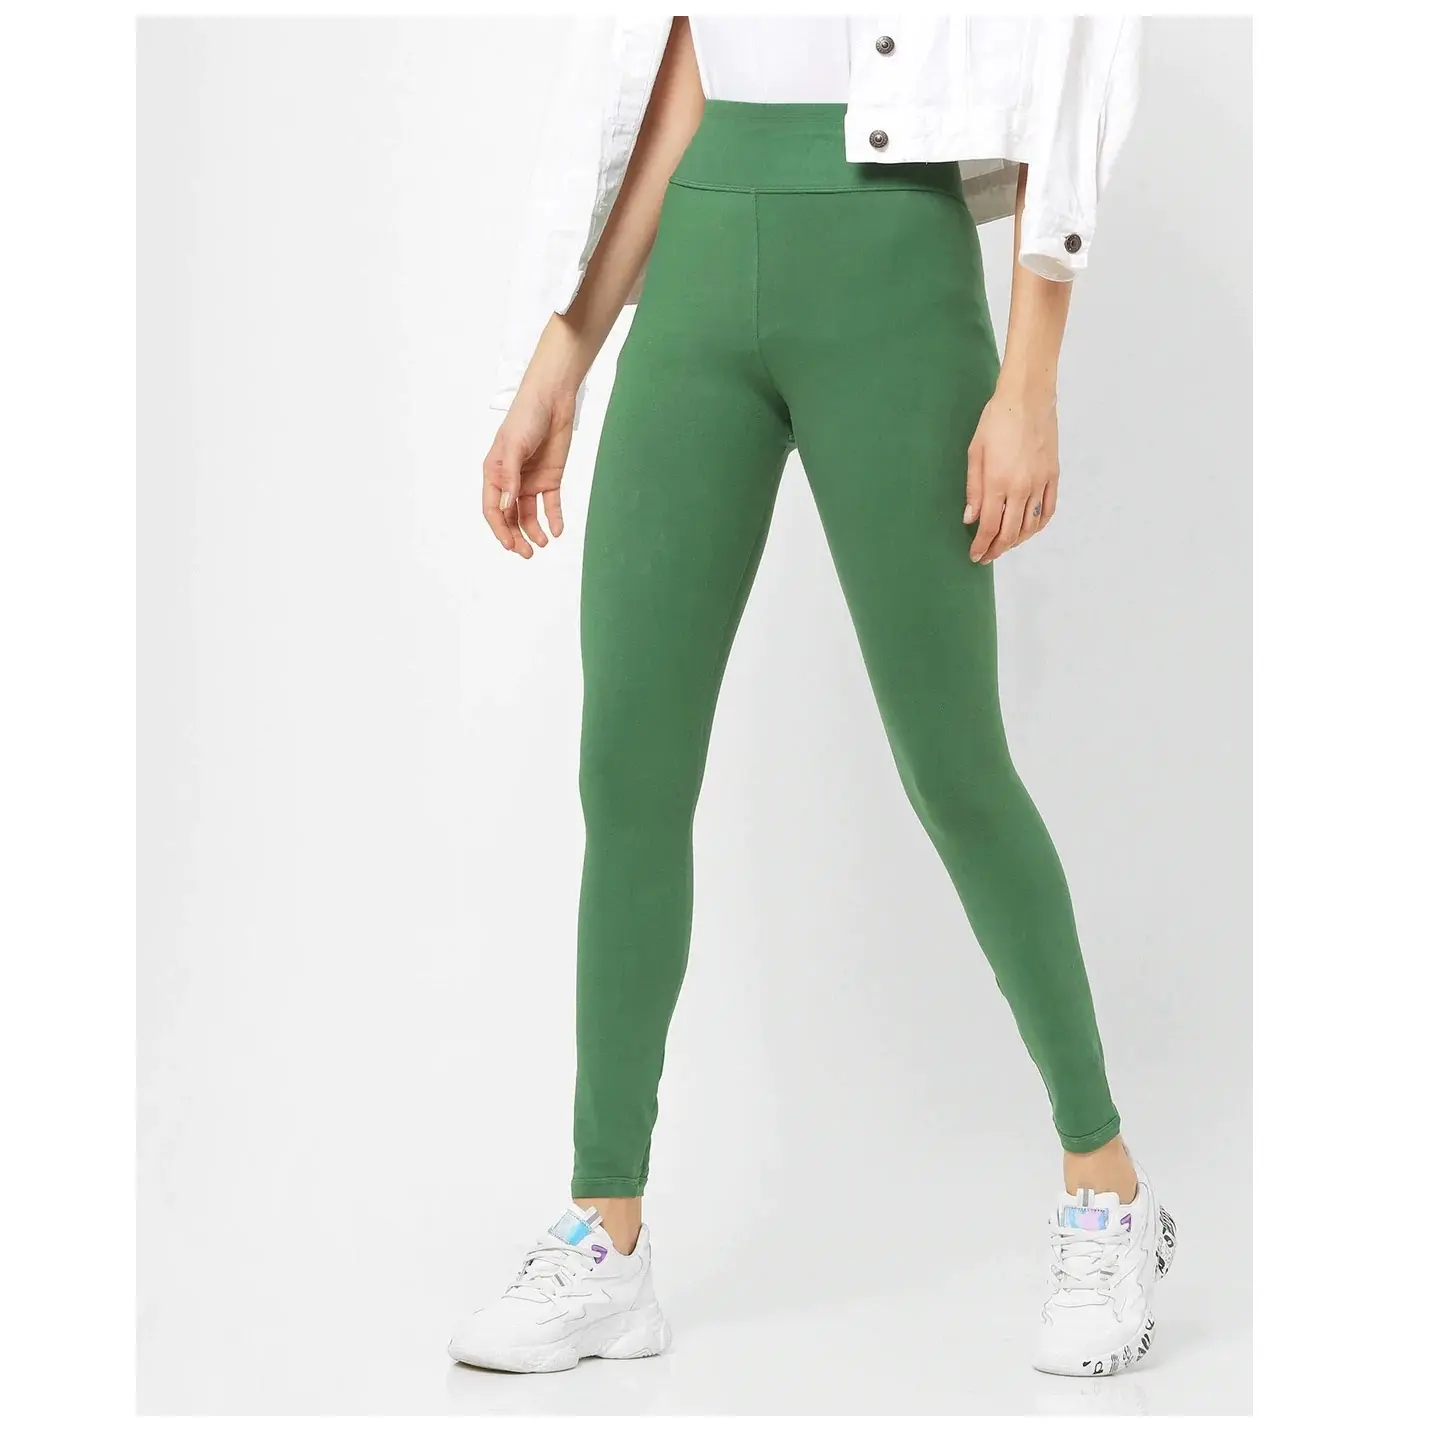 बिक्री पर महिला पूर्ण लंबाई टहलना और कसरत लेगिंग और के शीर्ष वर्ग के रंग में आते कभी हरे जिम कसरत सूट